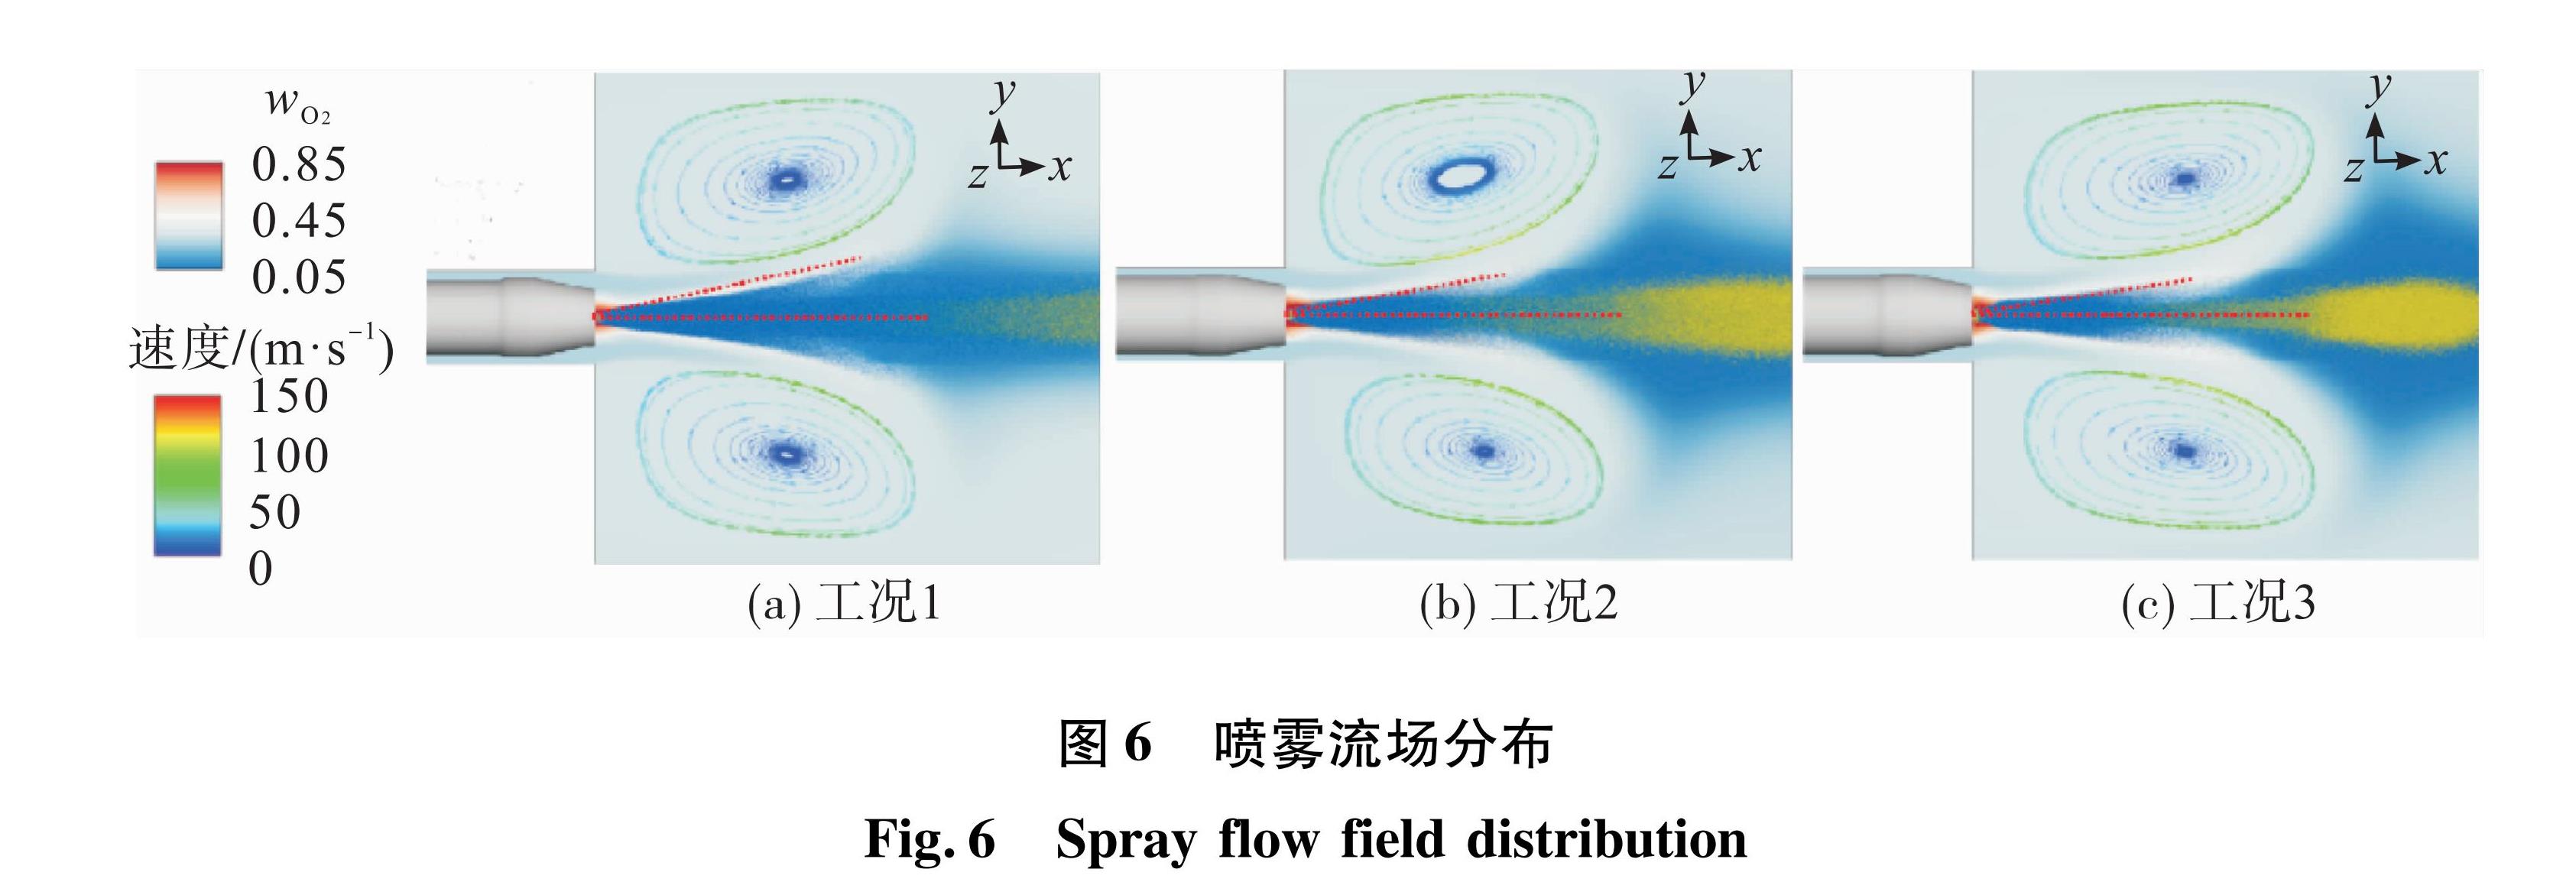 图6 喷雾流场分布<br/>Fig.6 Spray flow field distribution